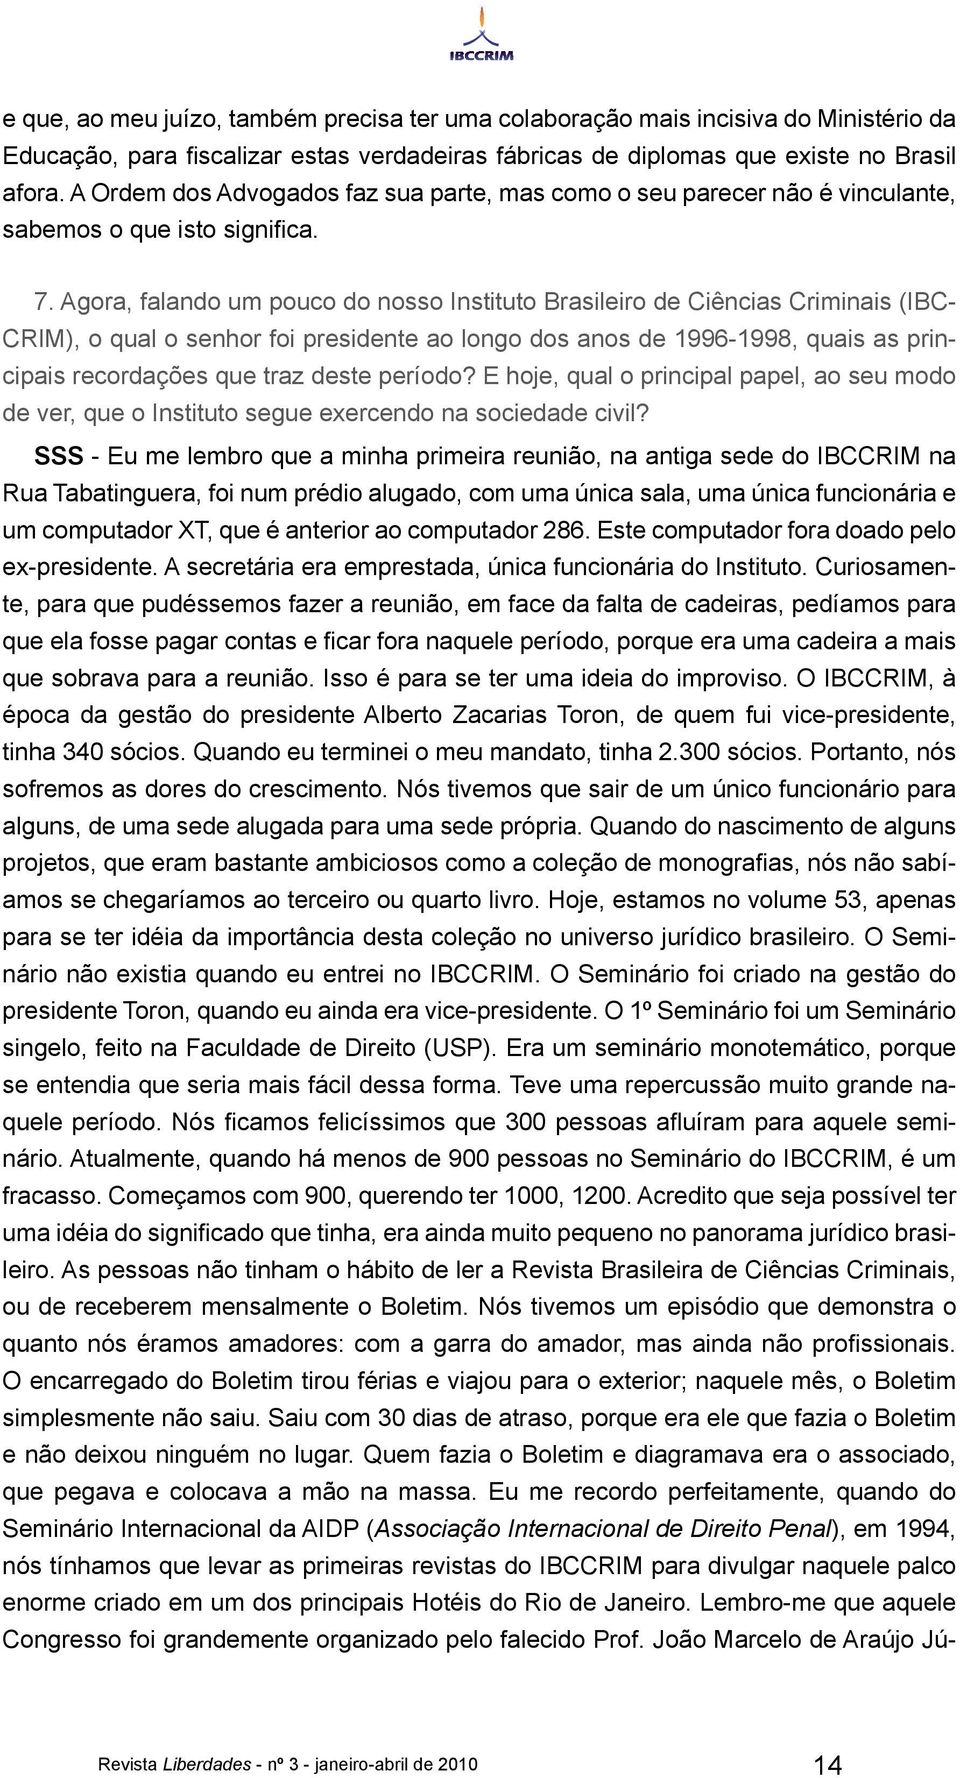 Agora, falando um pouco do nosso Instituto Brasileiro de Ciências Criminais (IBC- CRIM), o qual o senhor foi presidente ao longo dos anos de 1996-1998, quais as principais recordações que traz deste